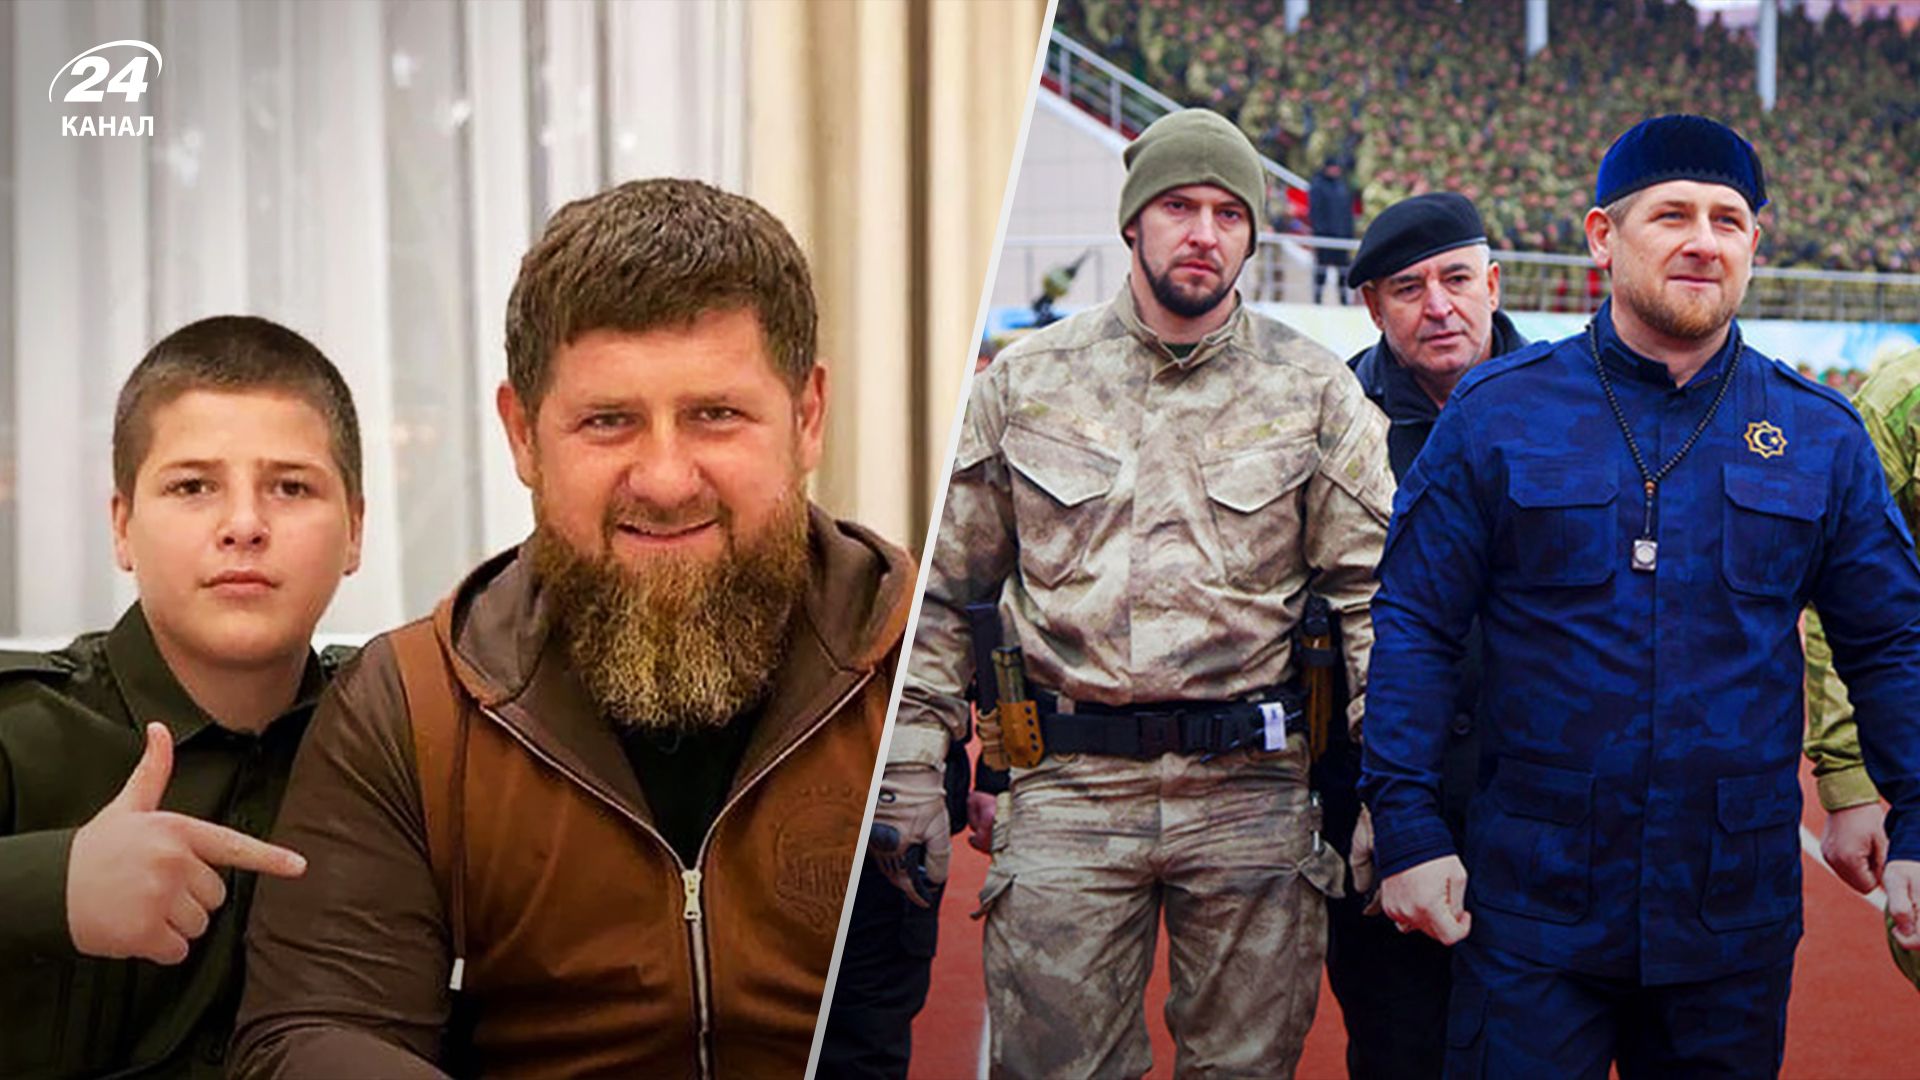 Какие процессы запустятся в Чечне после смерти Кадырова - что будет делать сын Адам - 24 Канал